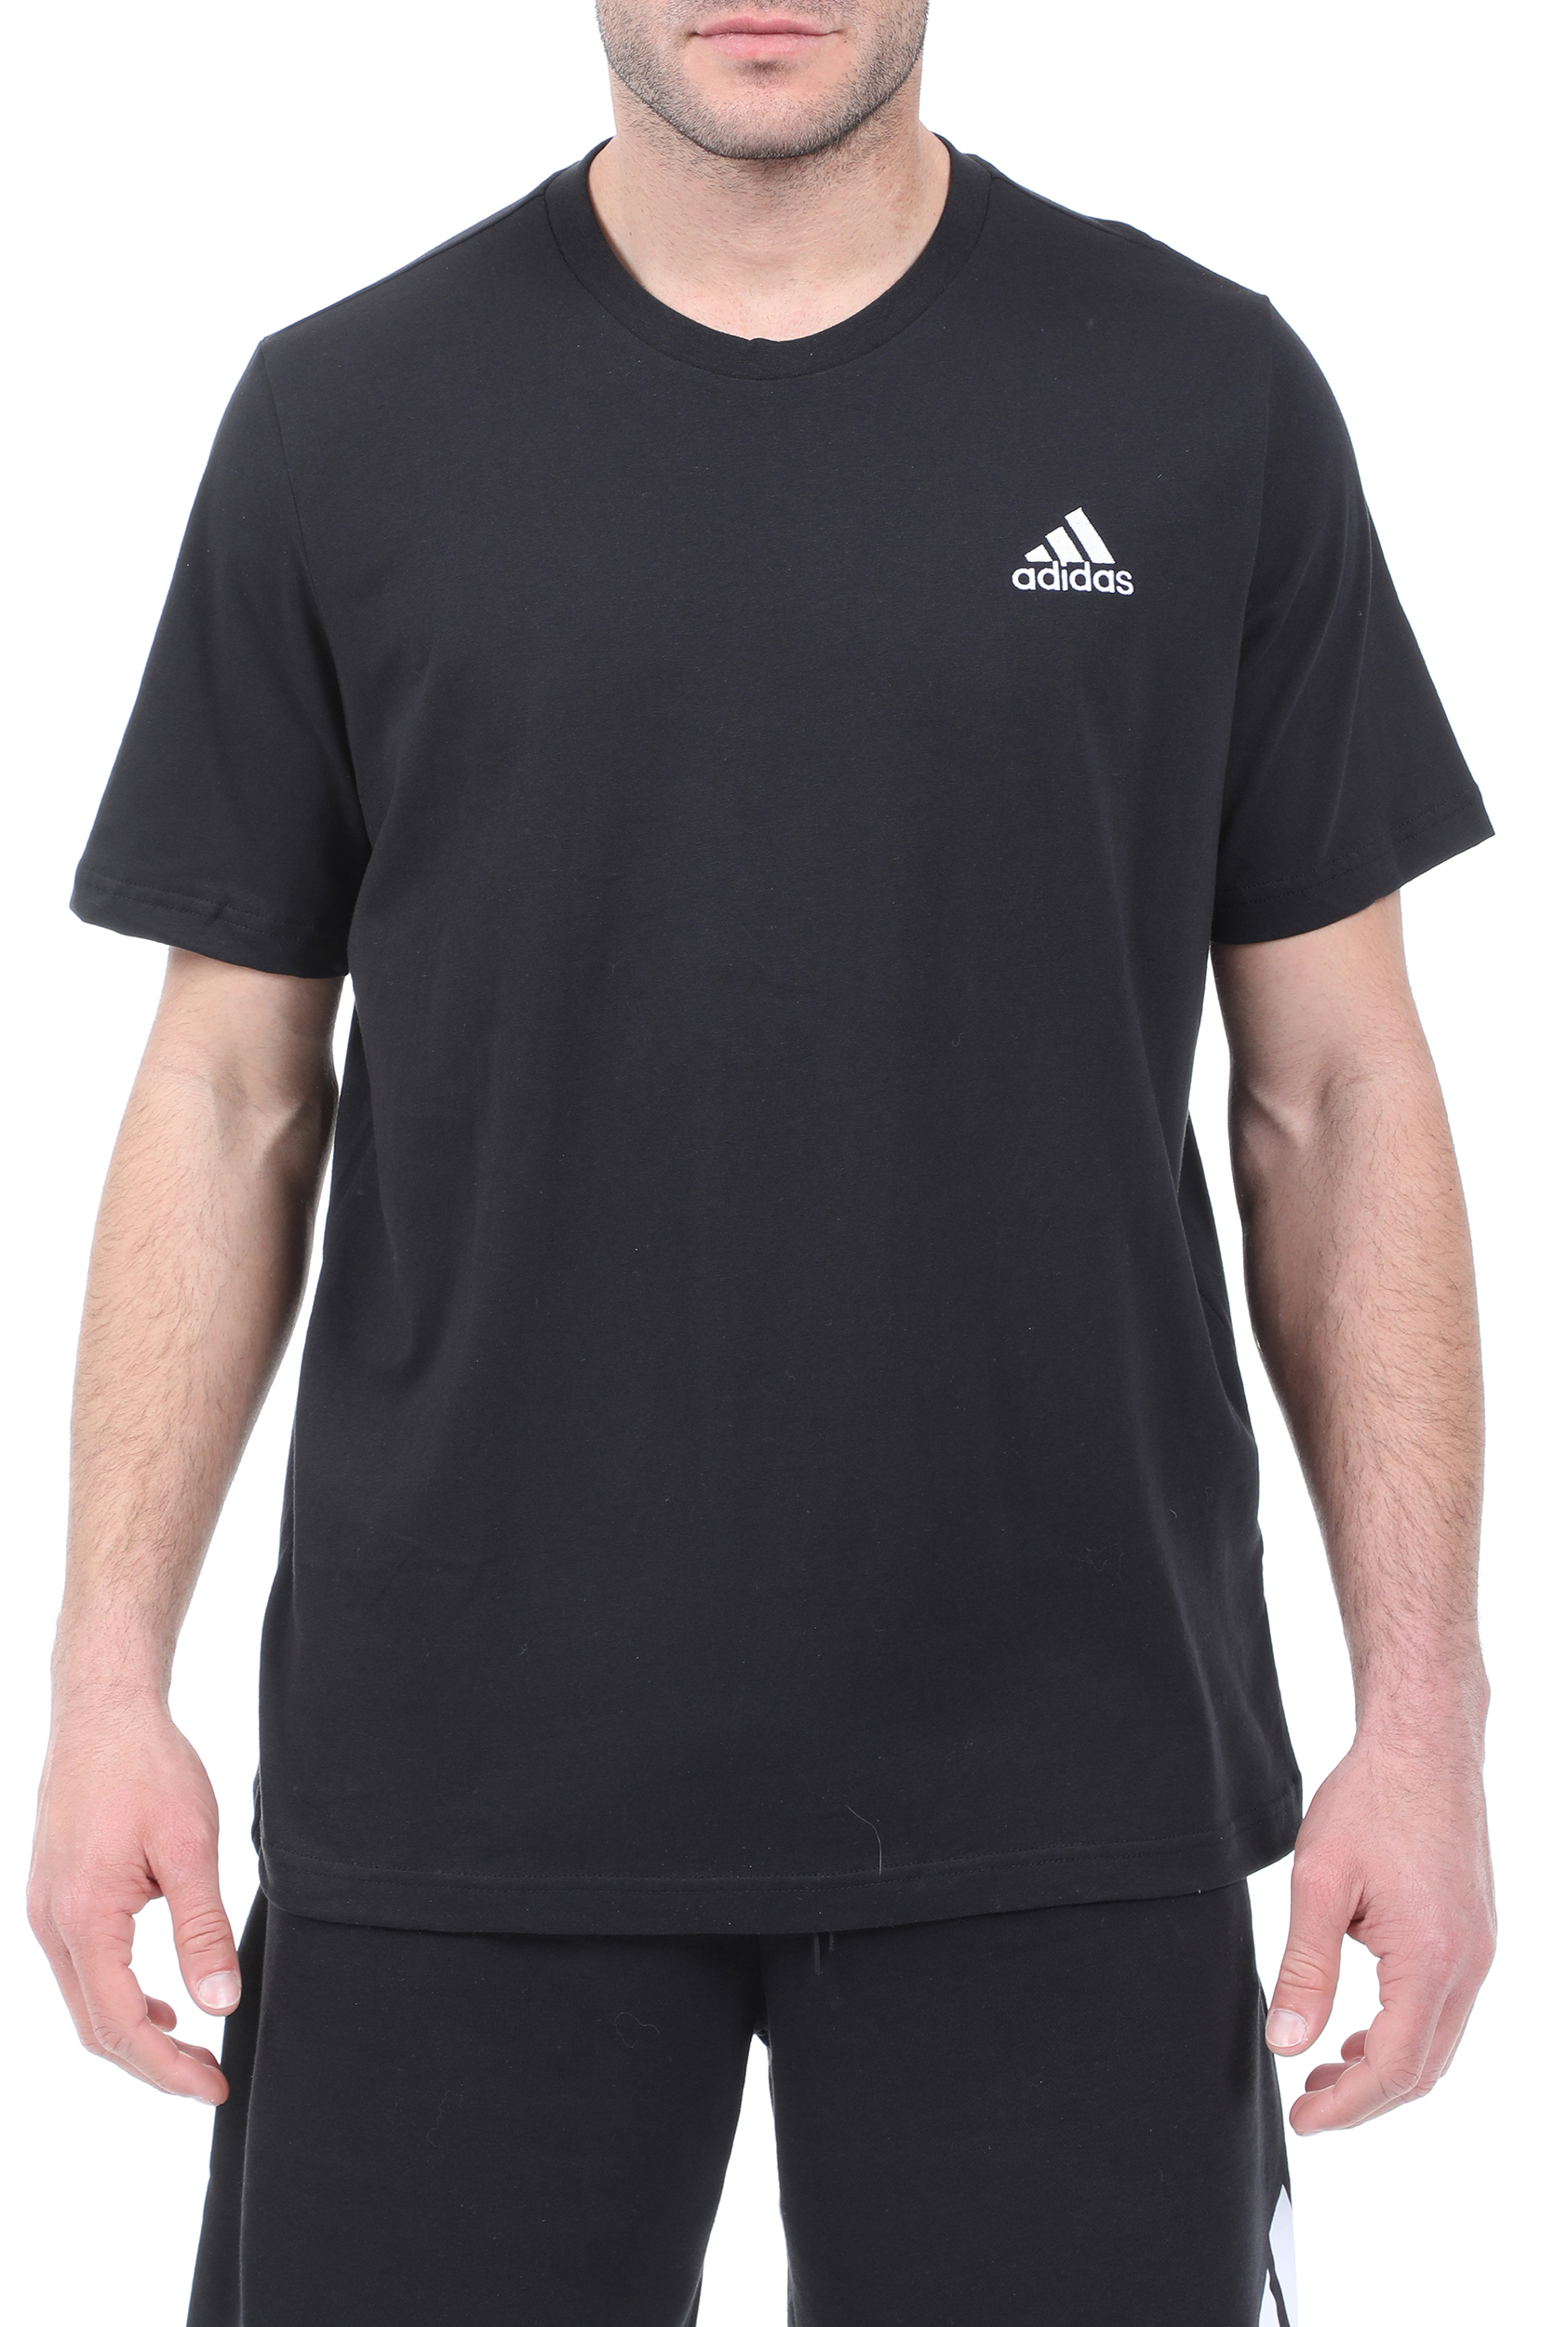 Ανδρικά/Ρούχα/Αθλητικά/T-shirt adidas Performance - Ανδρικό t-shirt adidas Performance SL SJ T μαύρο